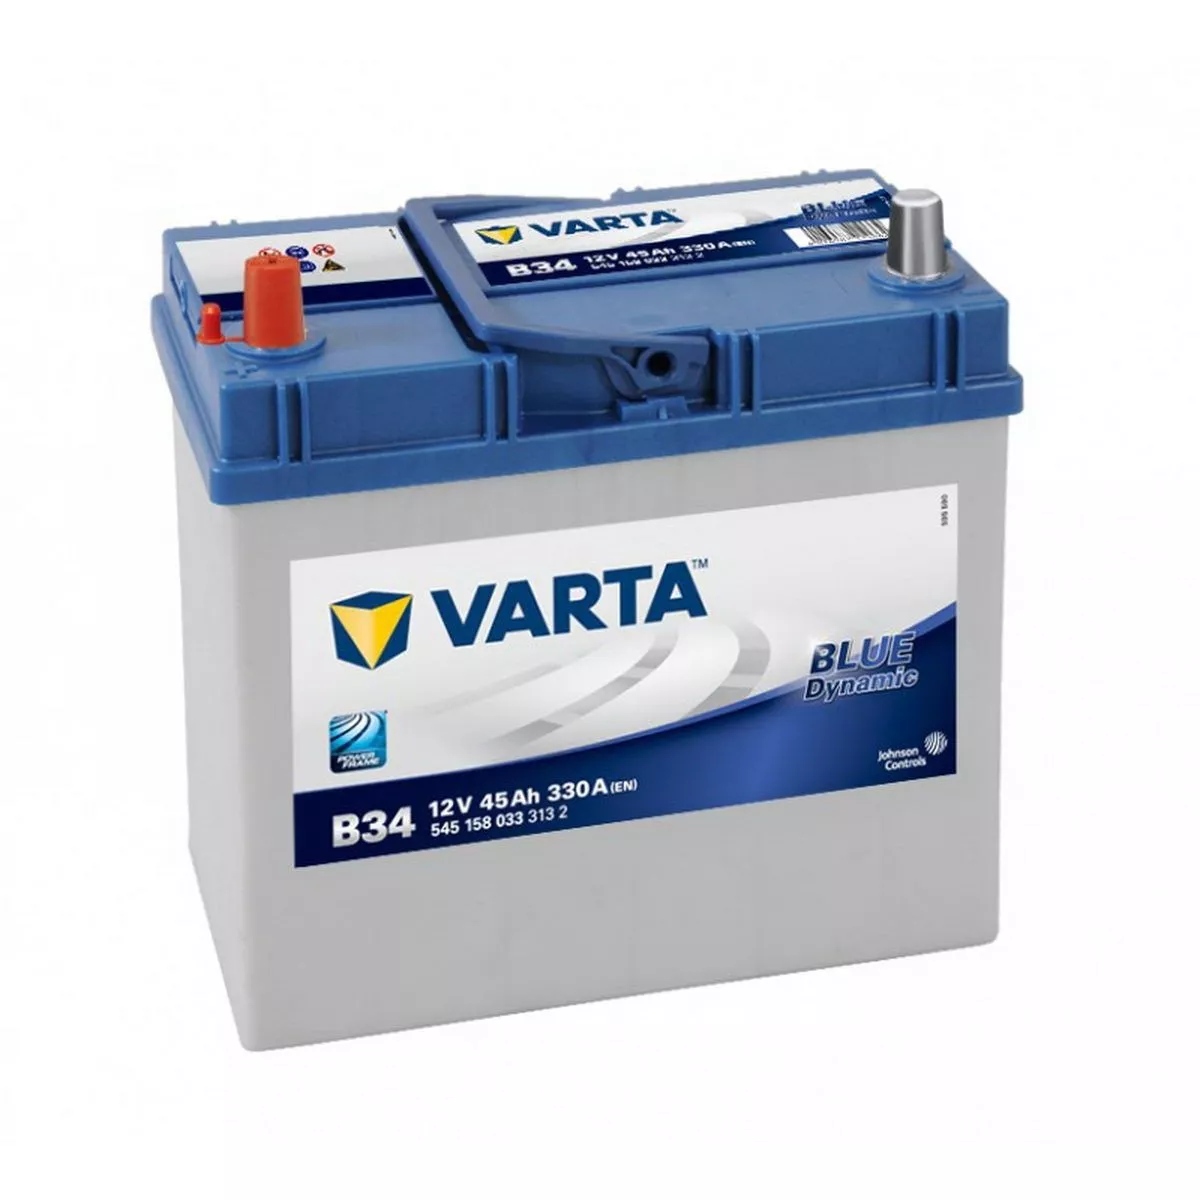 Аккумулятор автомобильный Varta Blue Dynamic B34 45 Ач 330 А Прямая полярность (238х129х227)  545 158 033